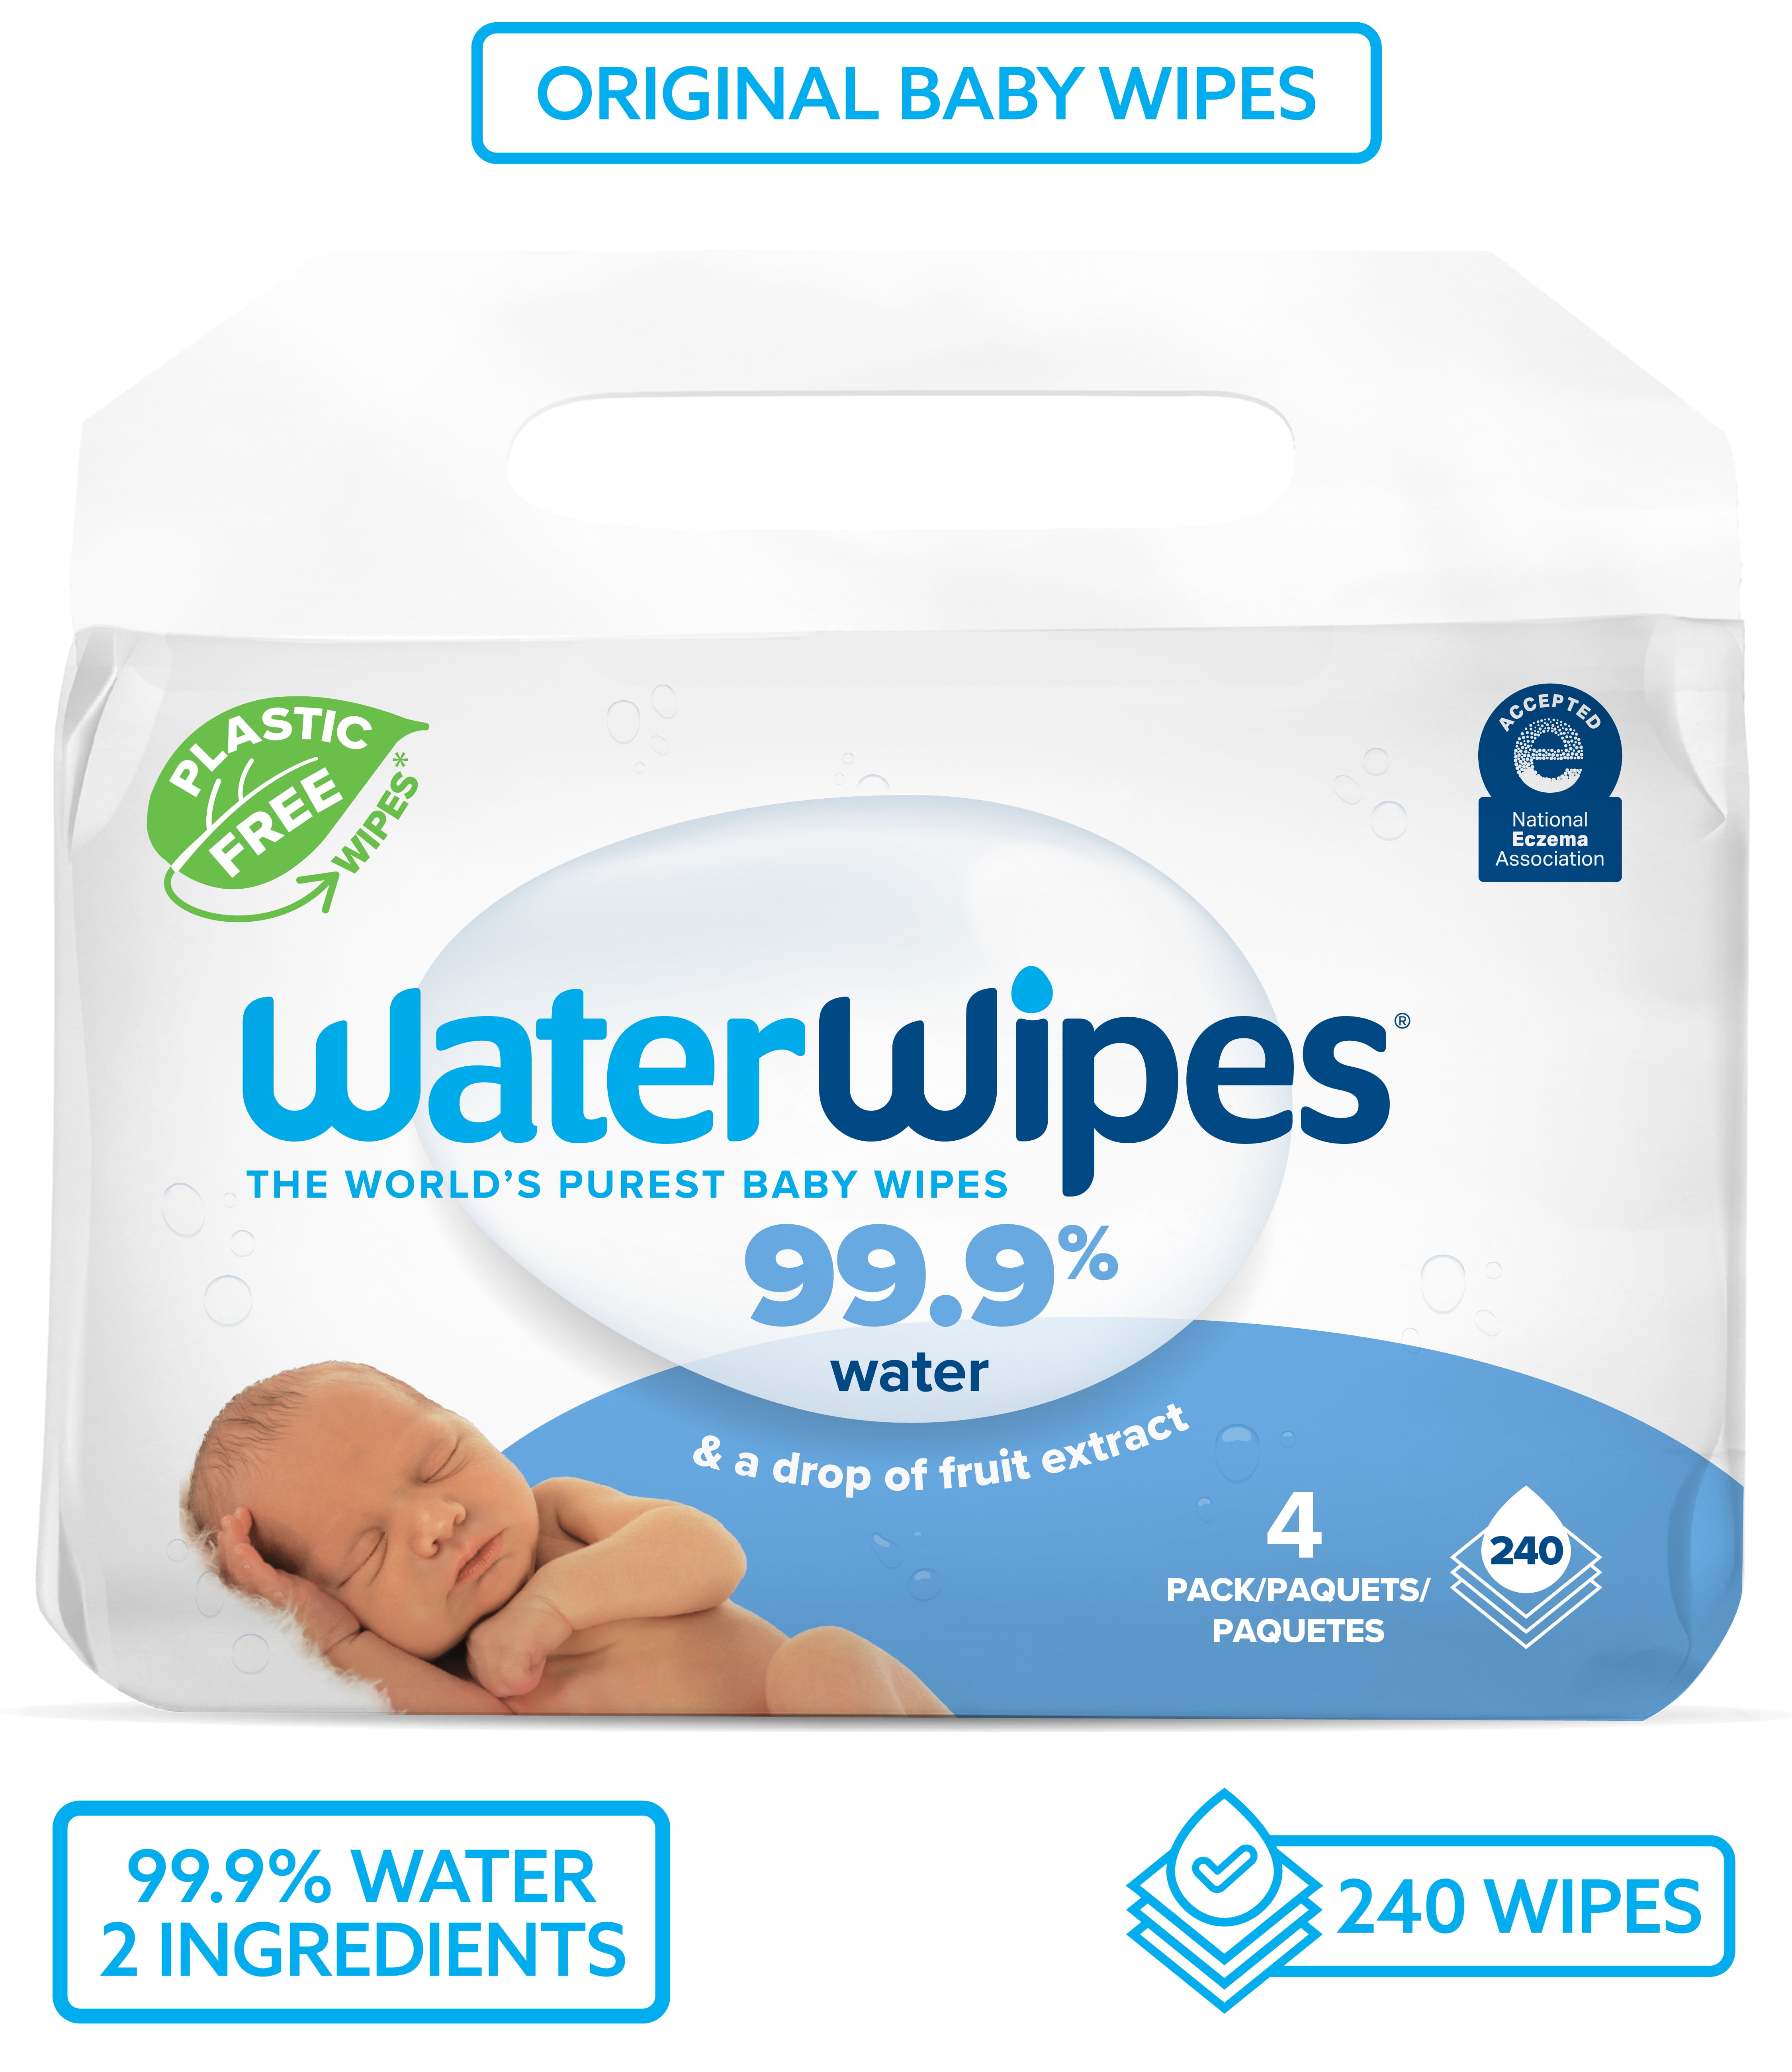 Buy Now WaterWipes Bio Baby Wipes Set 3x60